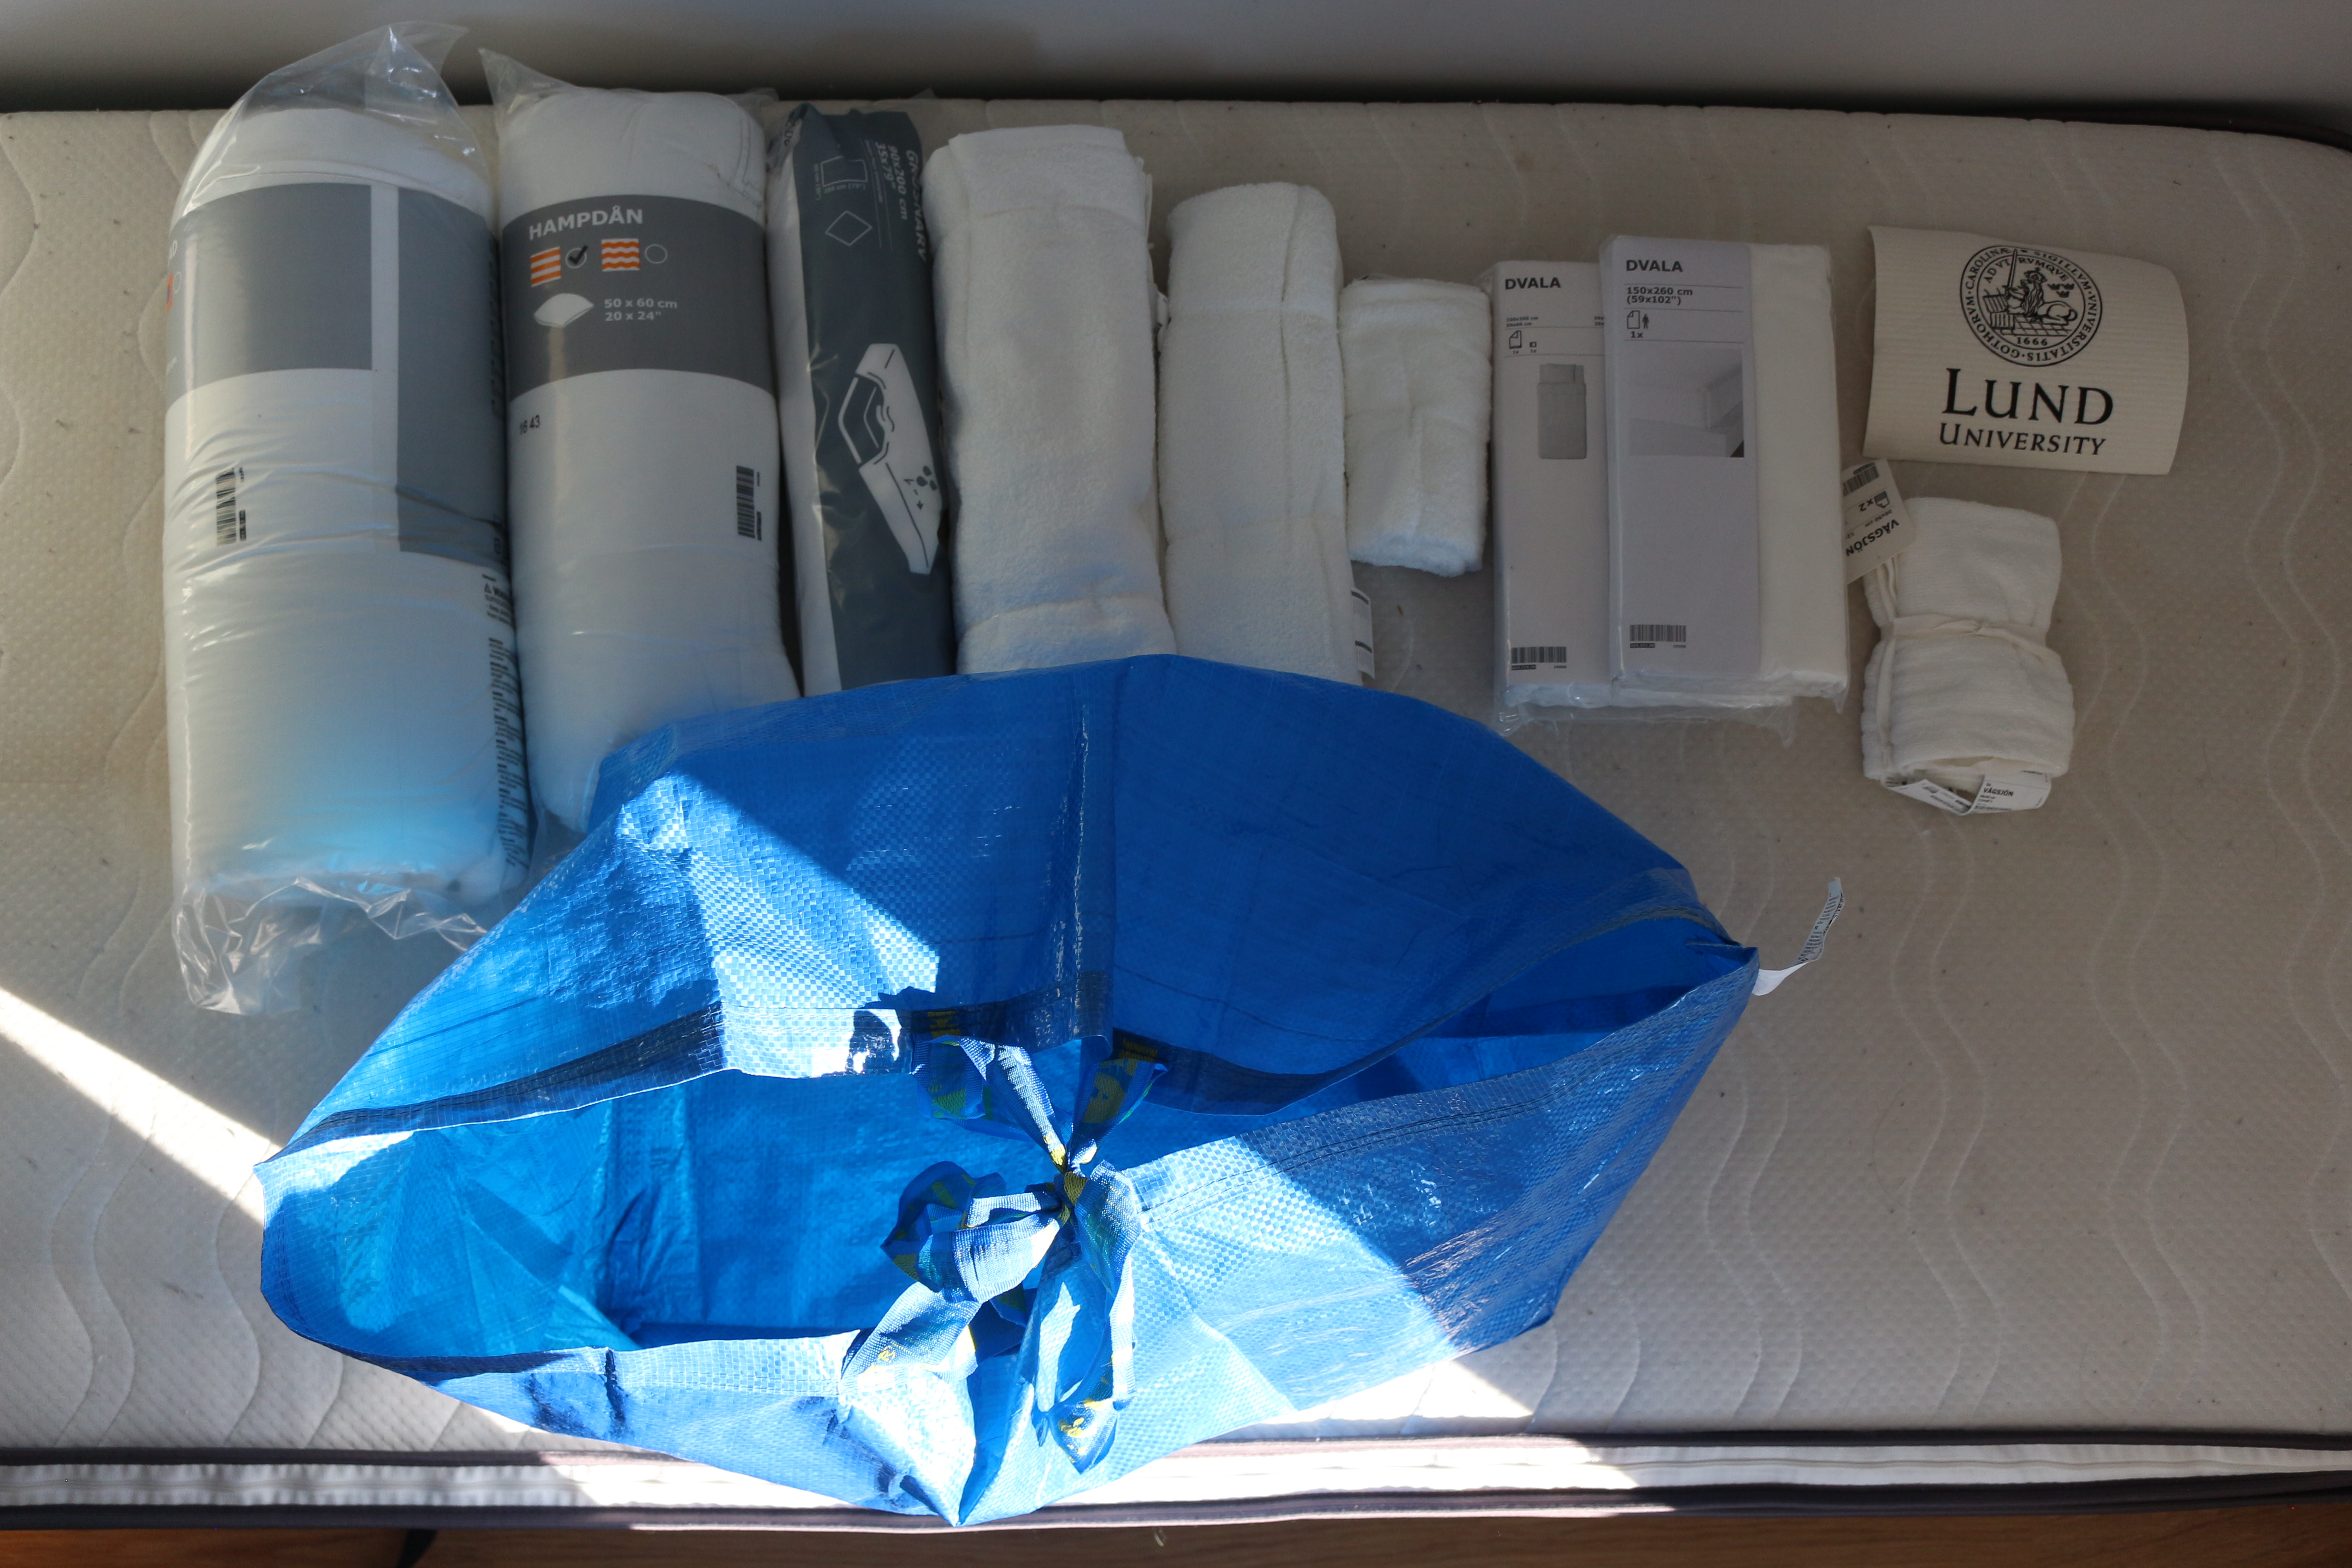 Le set acheté à IKEA par l'université de Lund, pour 79 euros : une couette, une housse de couette, une sous-couette, un protège-matelas, une taie d'oreiller, deux gants, deux serviettes, un sac bleu IKEA.